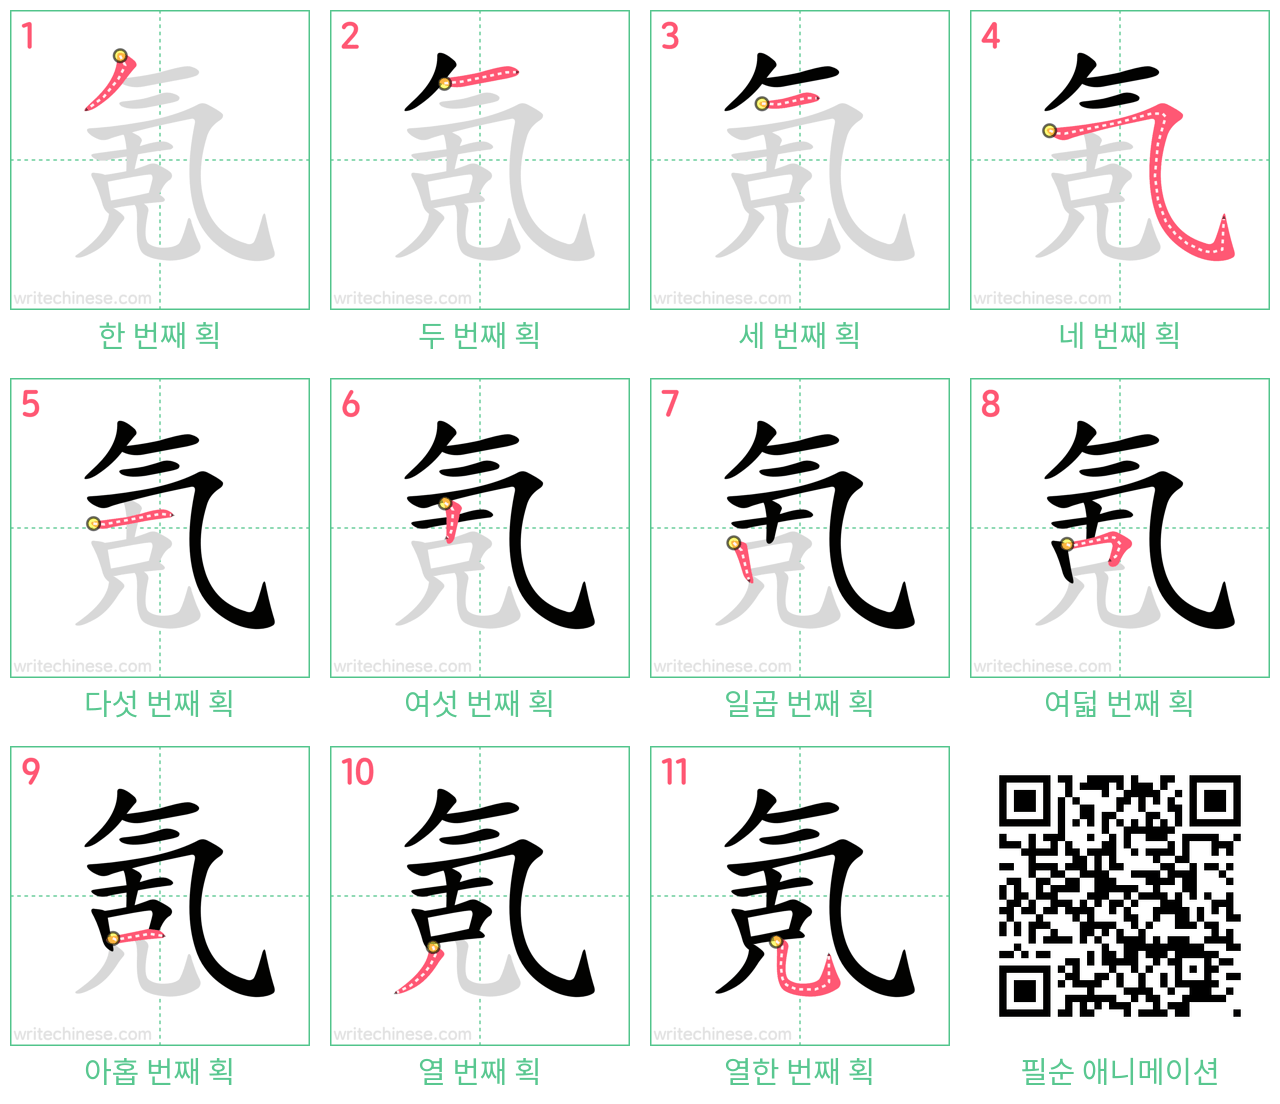 氪 step-by-step stroke order diagrams